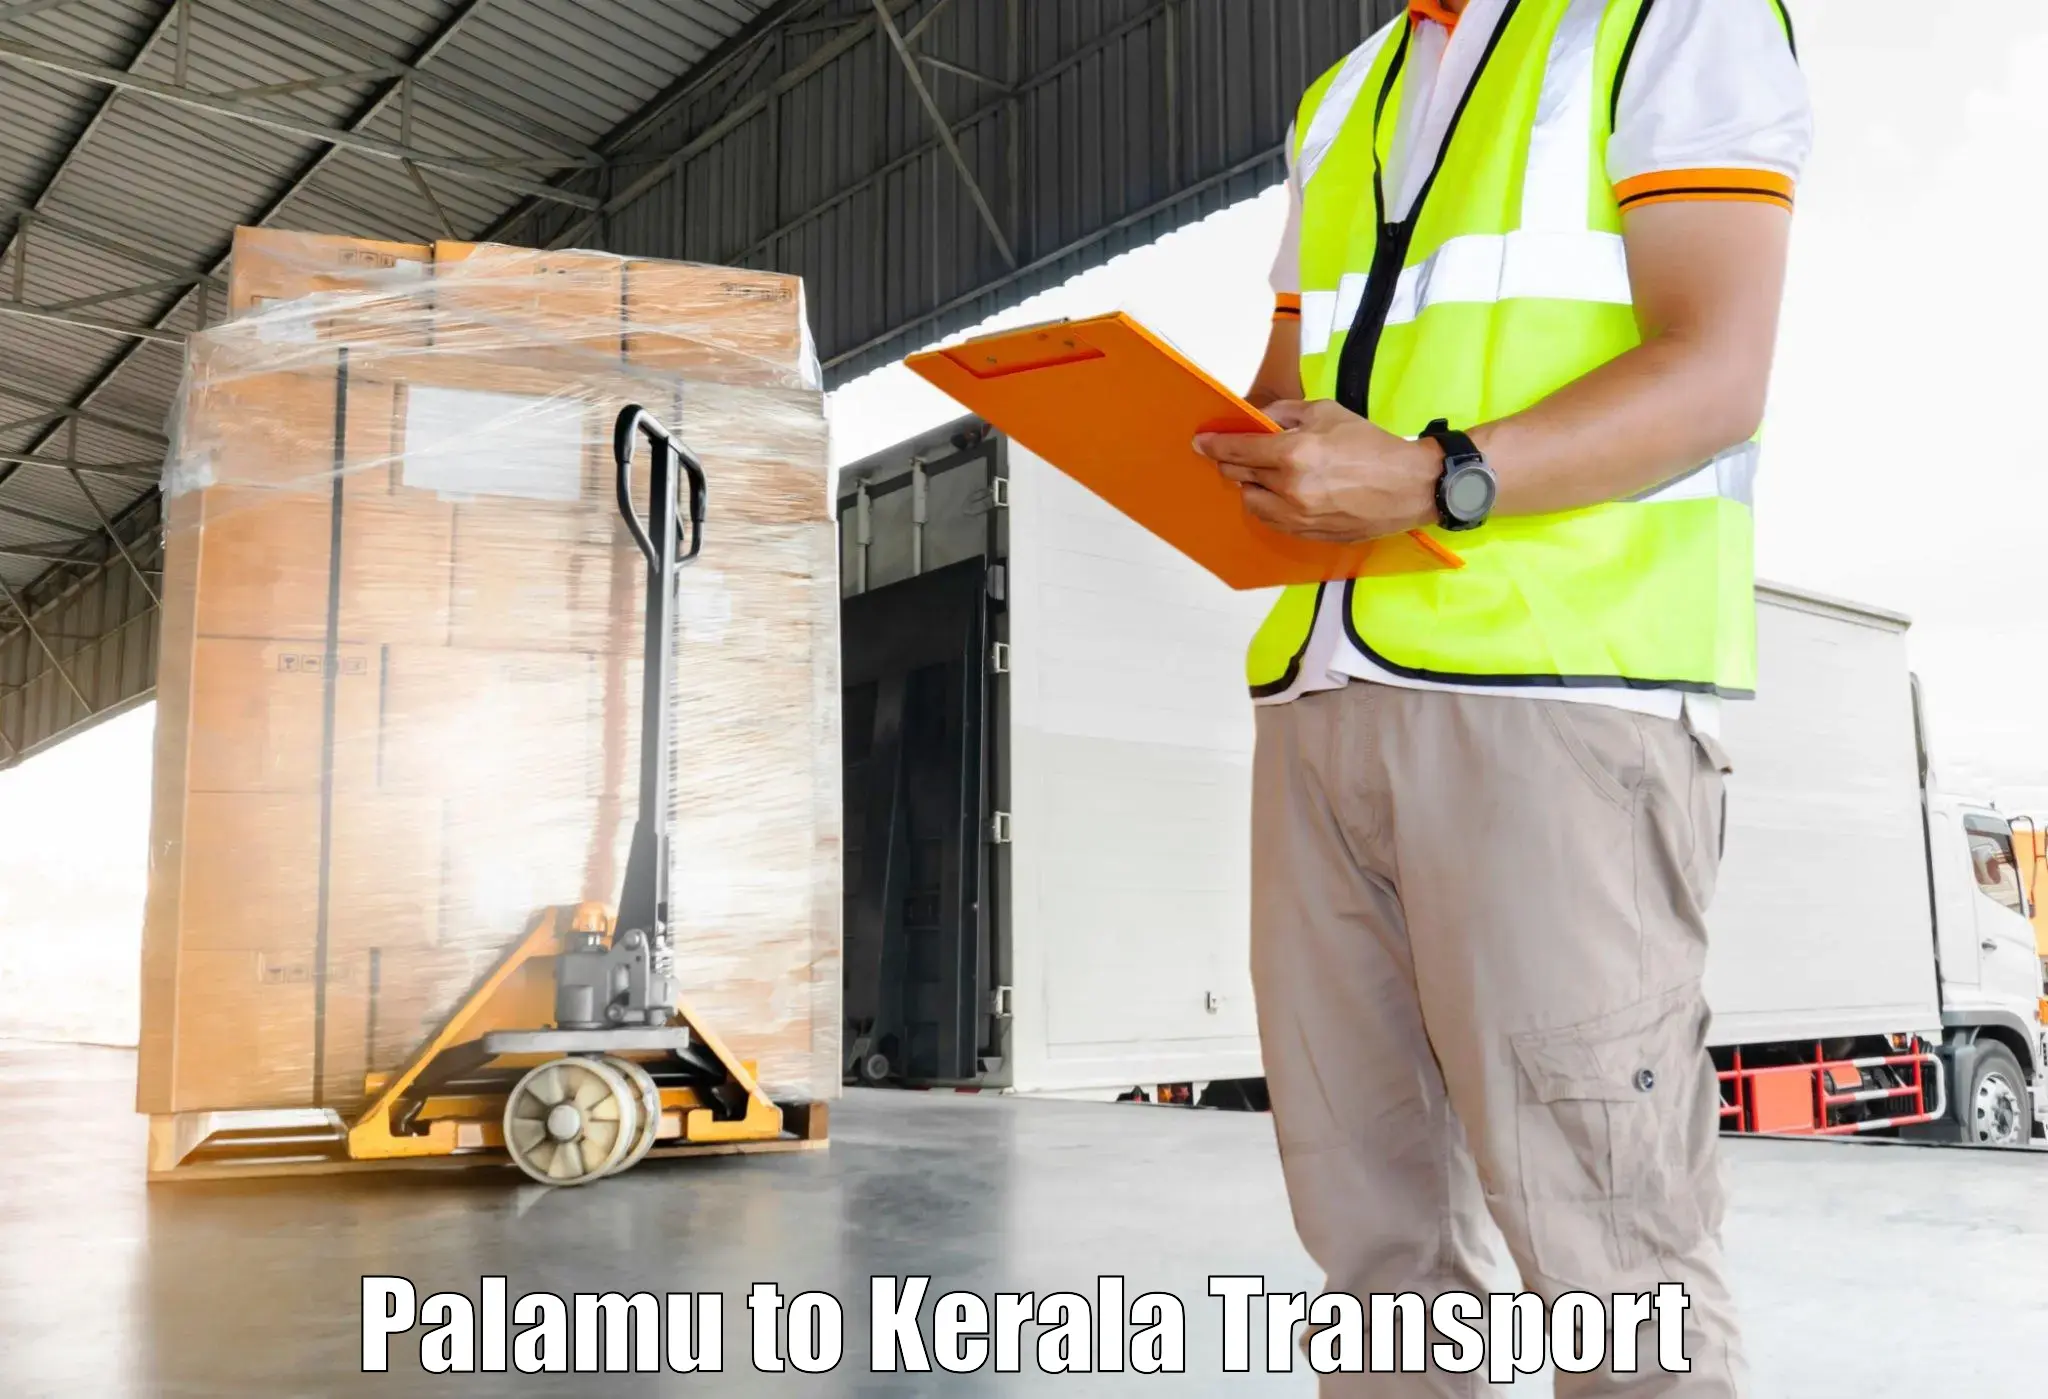 Truck transport companies in India Palamu to Guruvayur